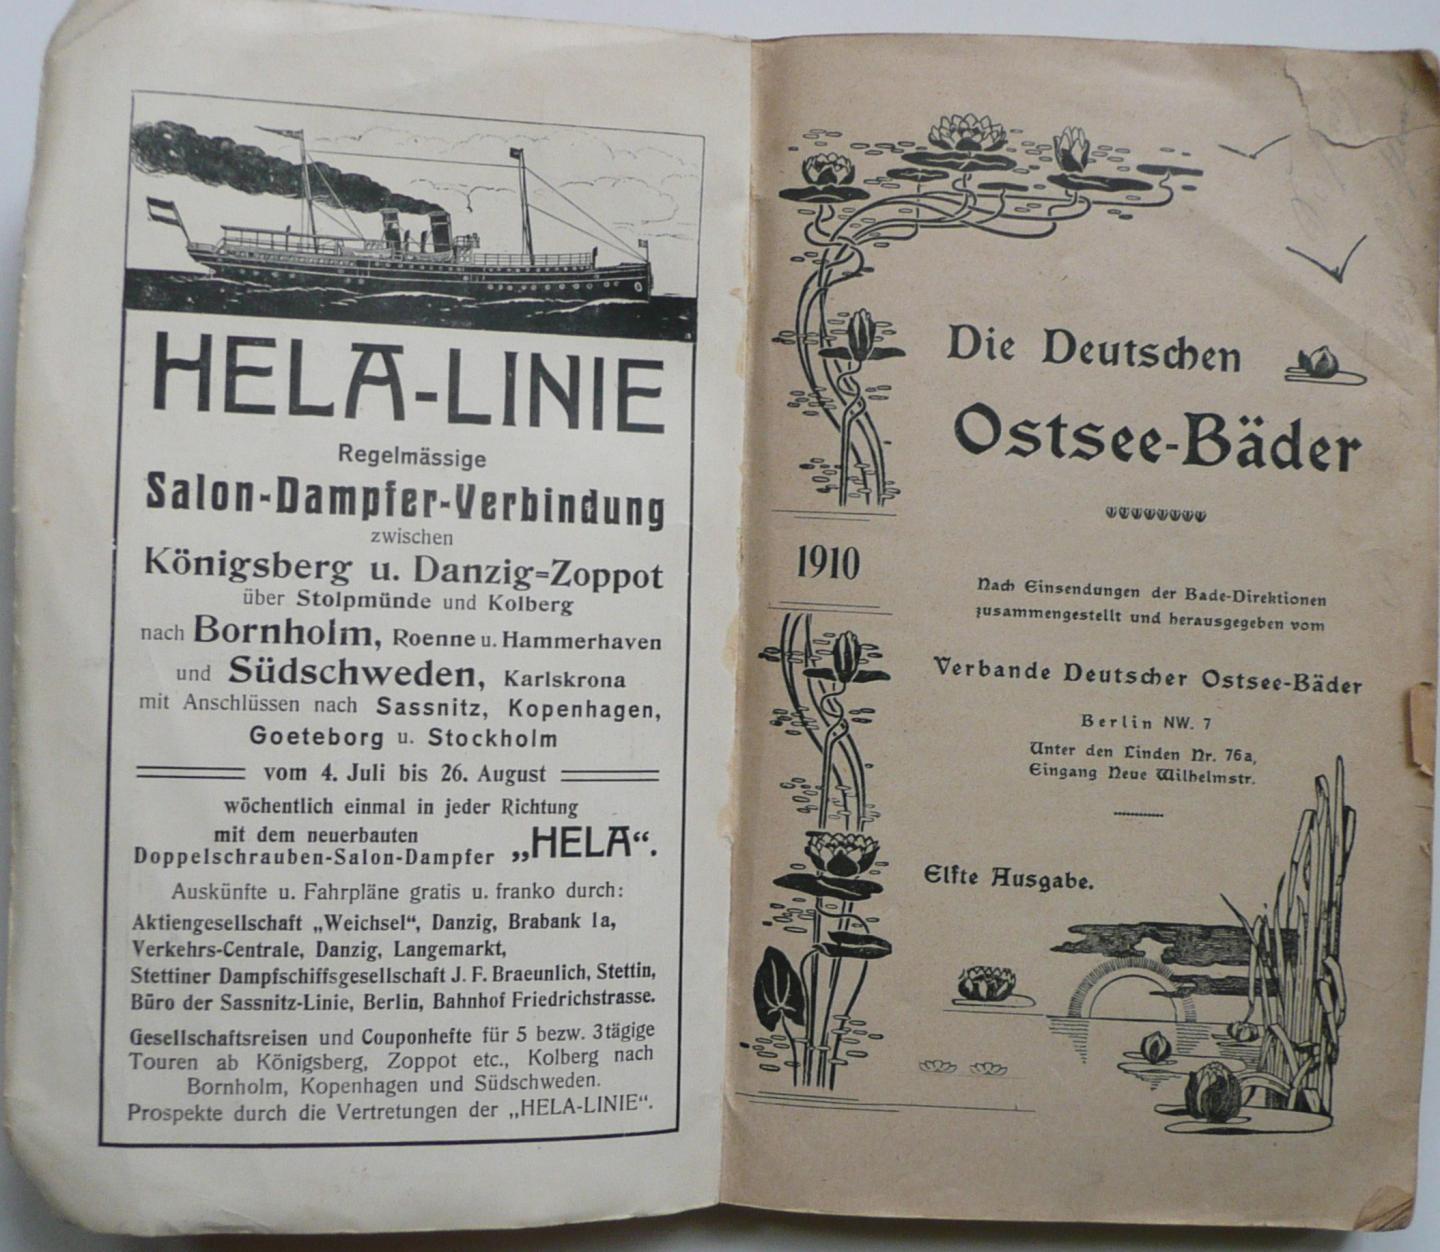  - Führer durch die Badeorte des Verbandes Deutscher Ostseebäder 1910